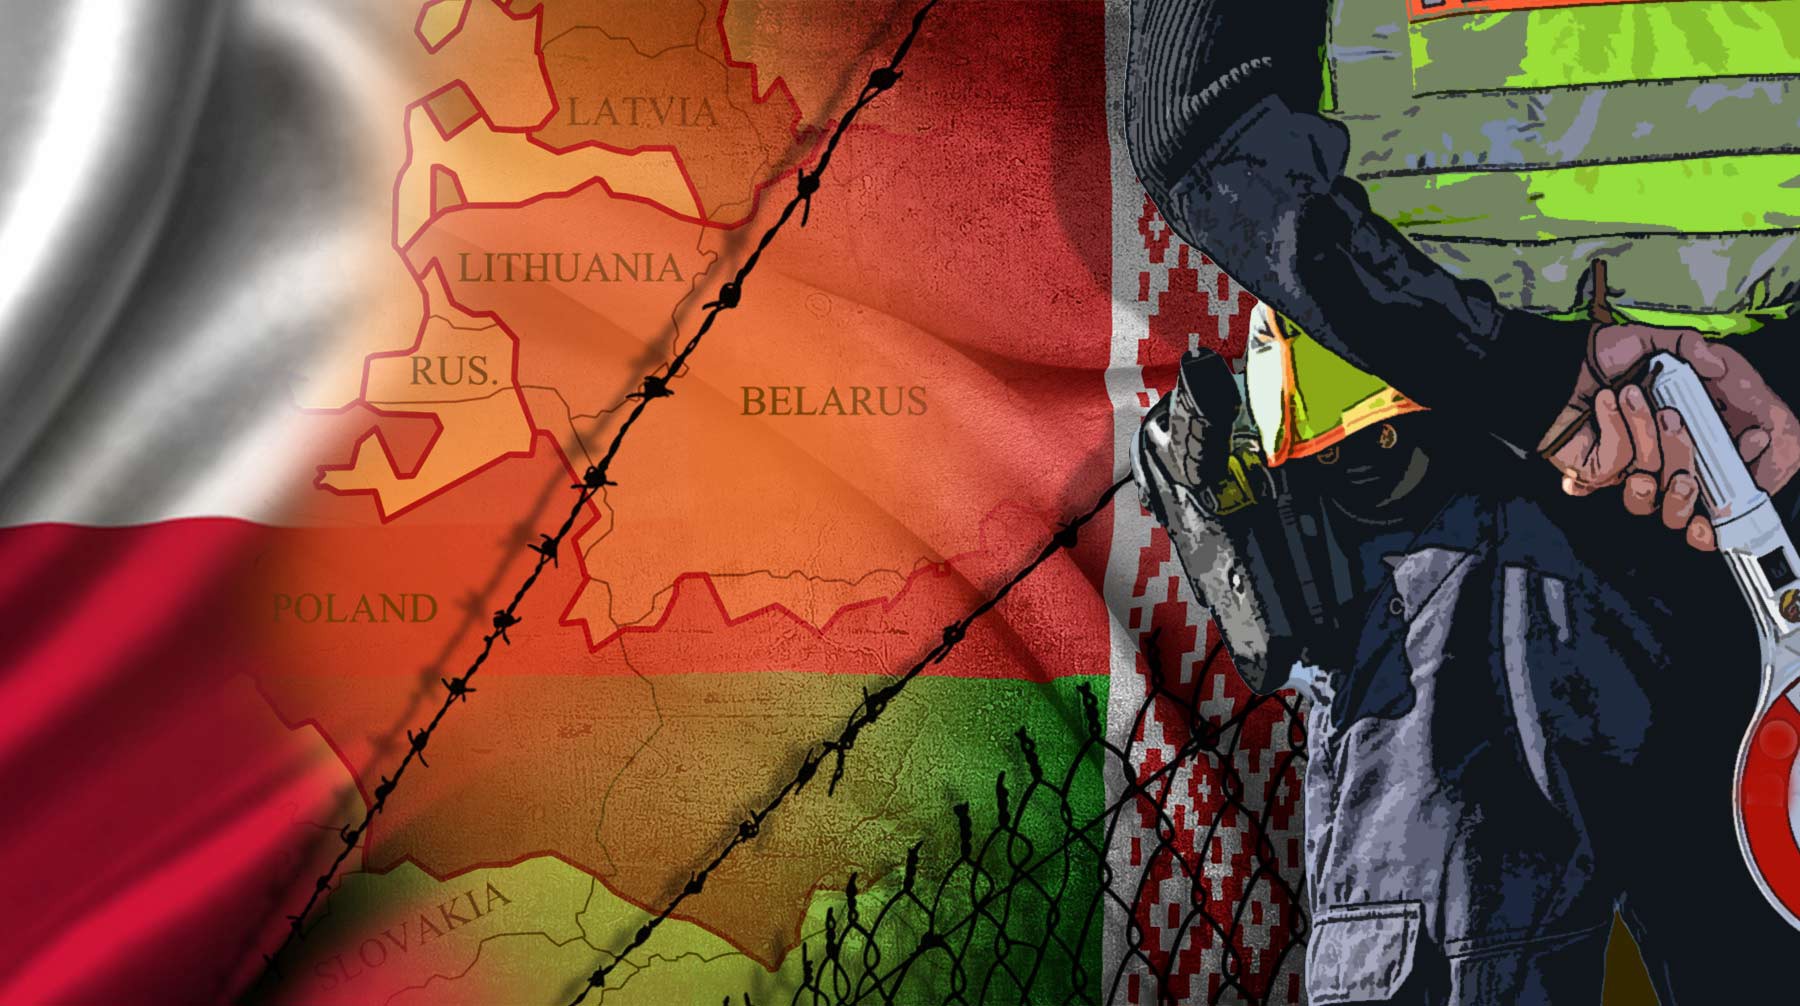 Dailystorm - Партизанской тропой навстречу польским пограничникам. Что происходит на границе Белоруссии и ЕС